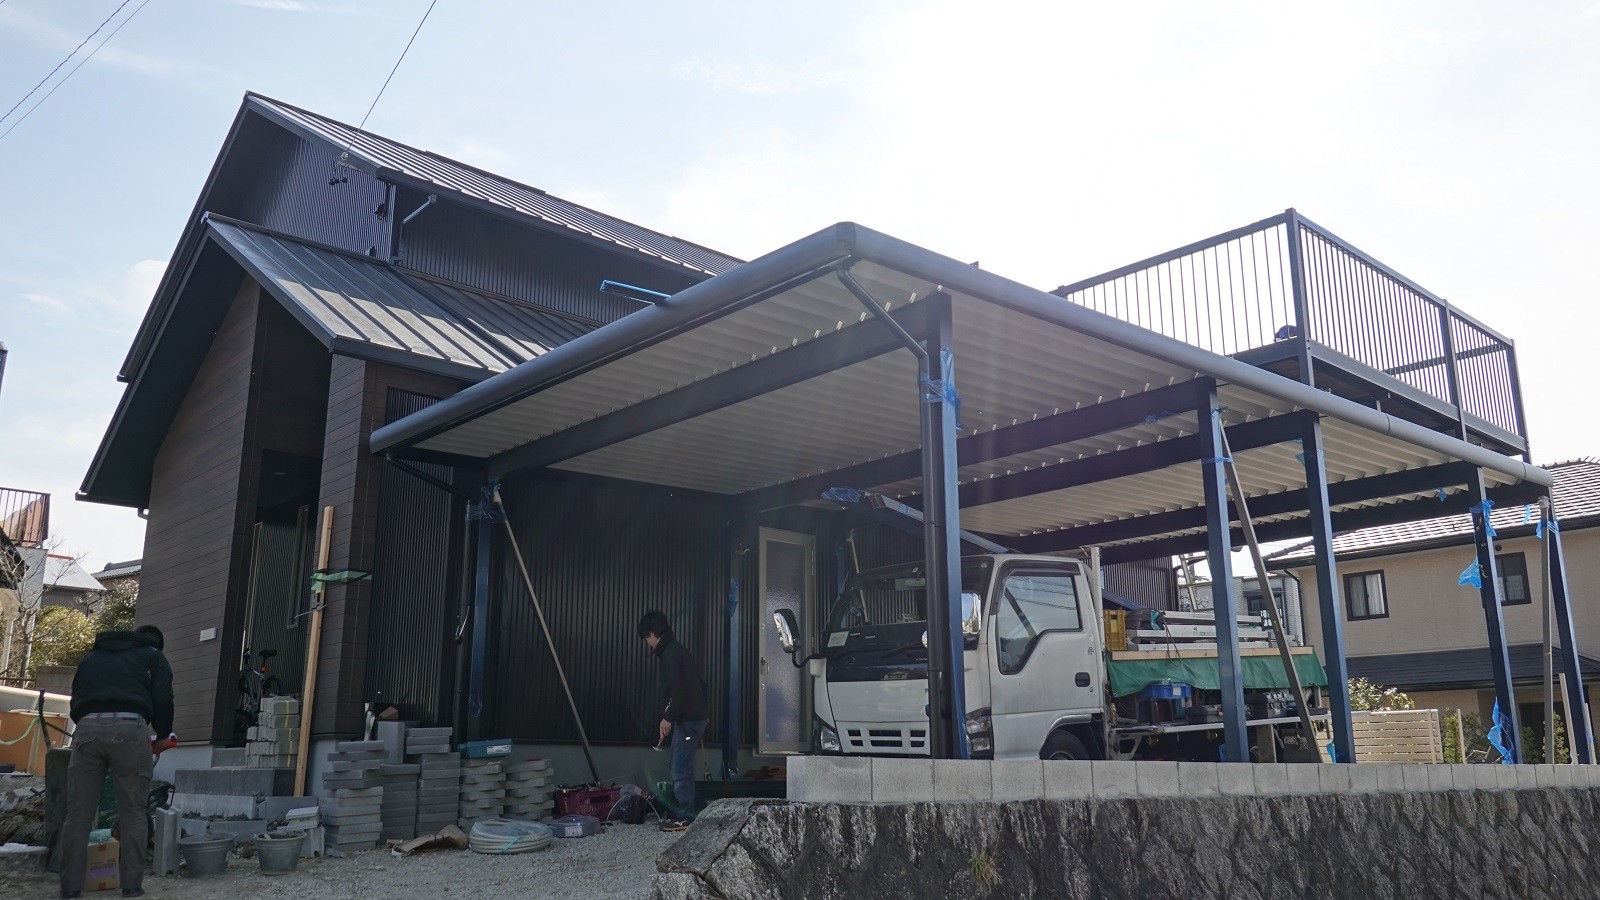 バルコニーカーポート付きの巨大な折板カーポートです 愛知県の外構ショップ Wise Gallery ワイズギャラリー エクステリア日記